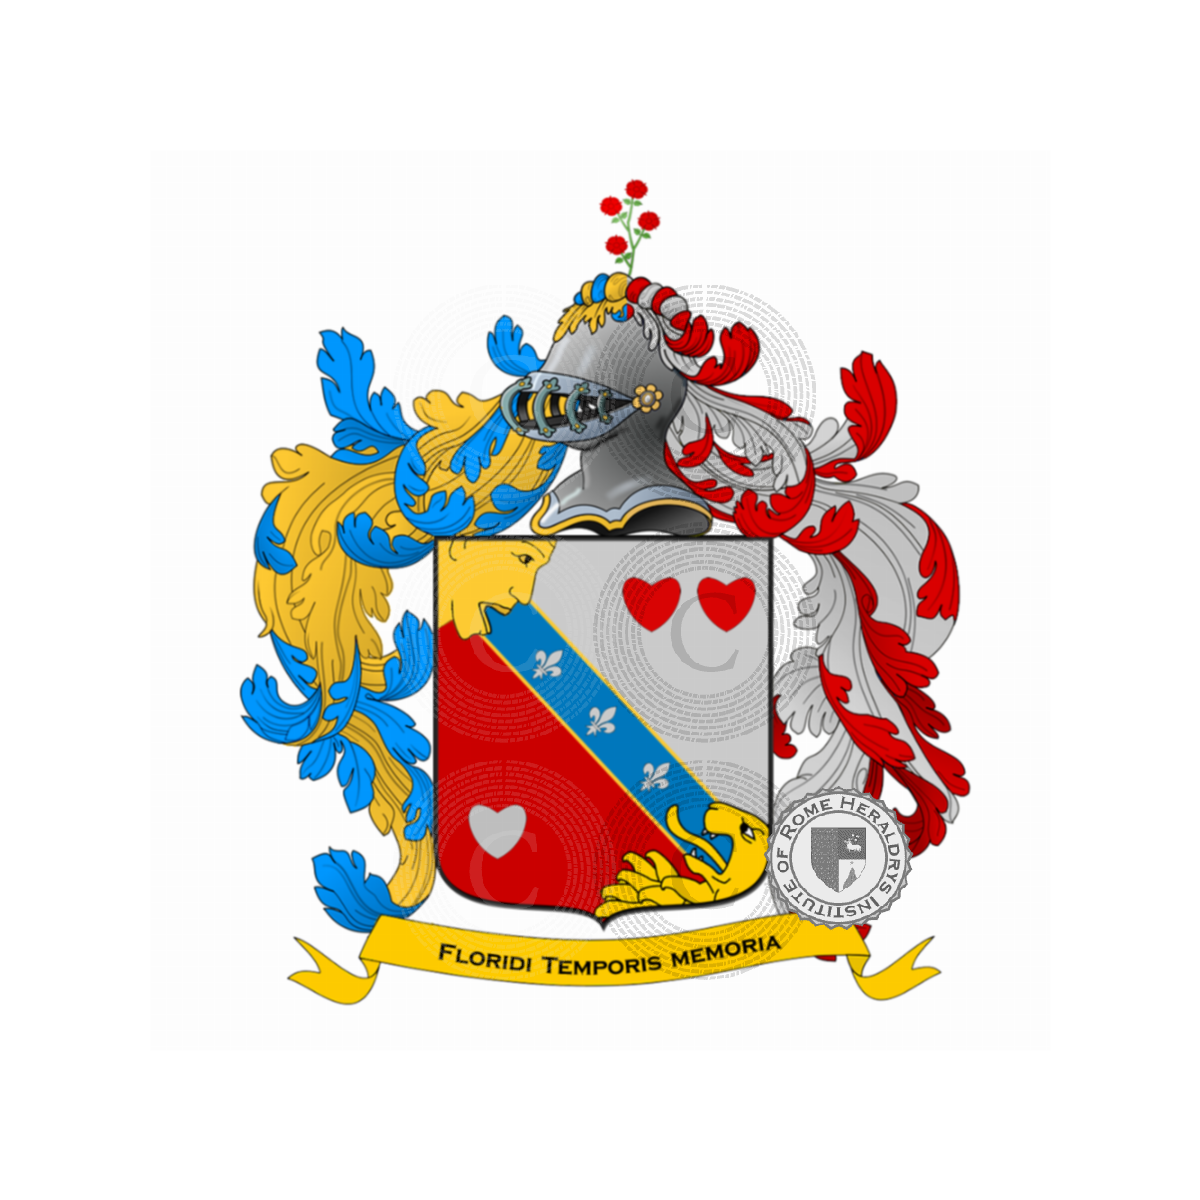 Wappen der FamilieColleoni